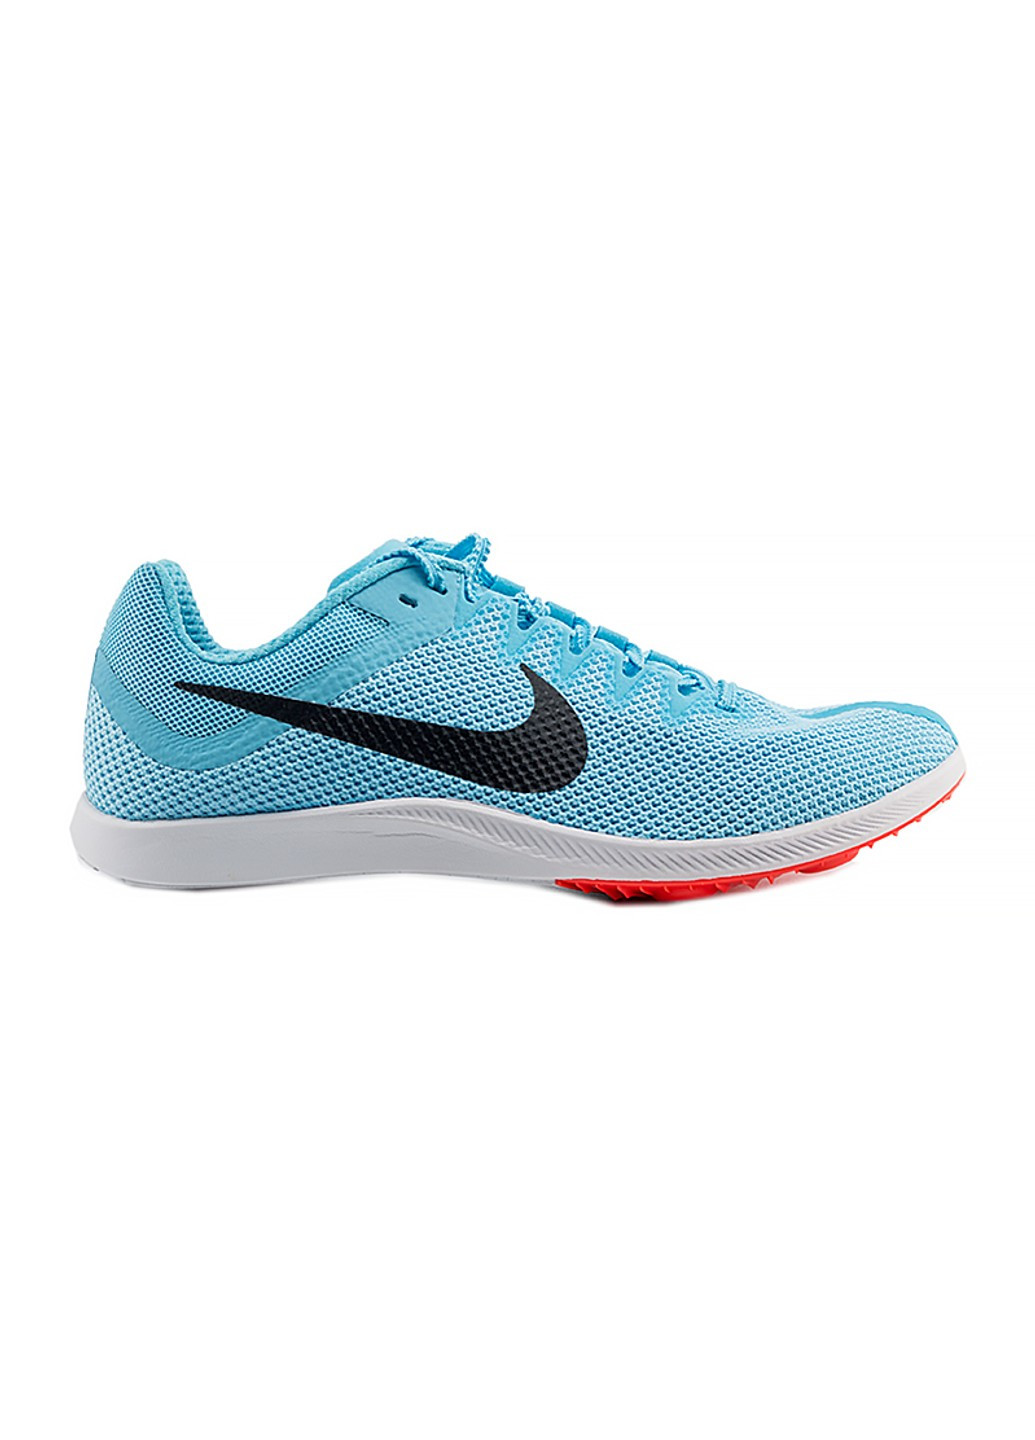 Голубые всесезонные шиповки zoom rival distance Nike